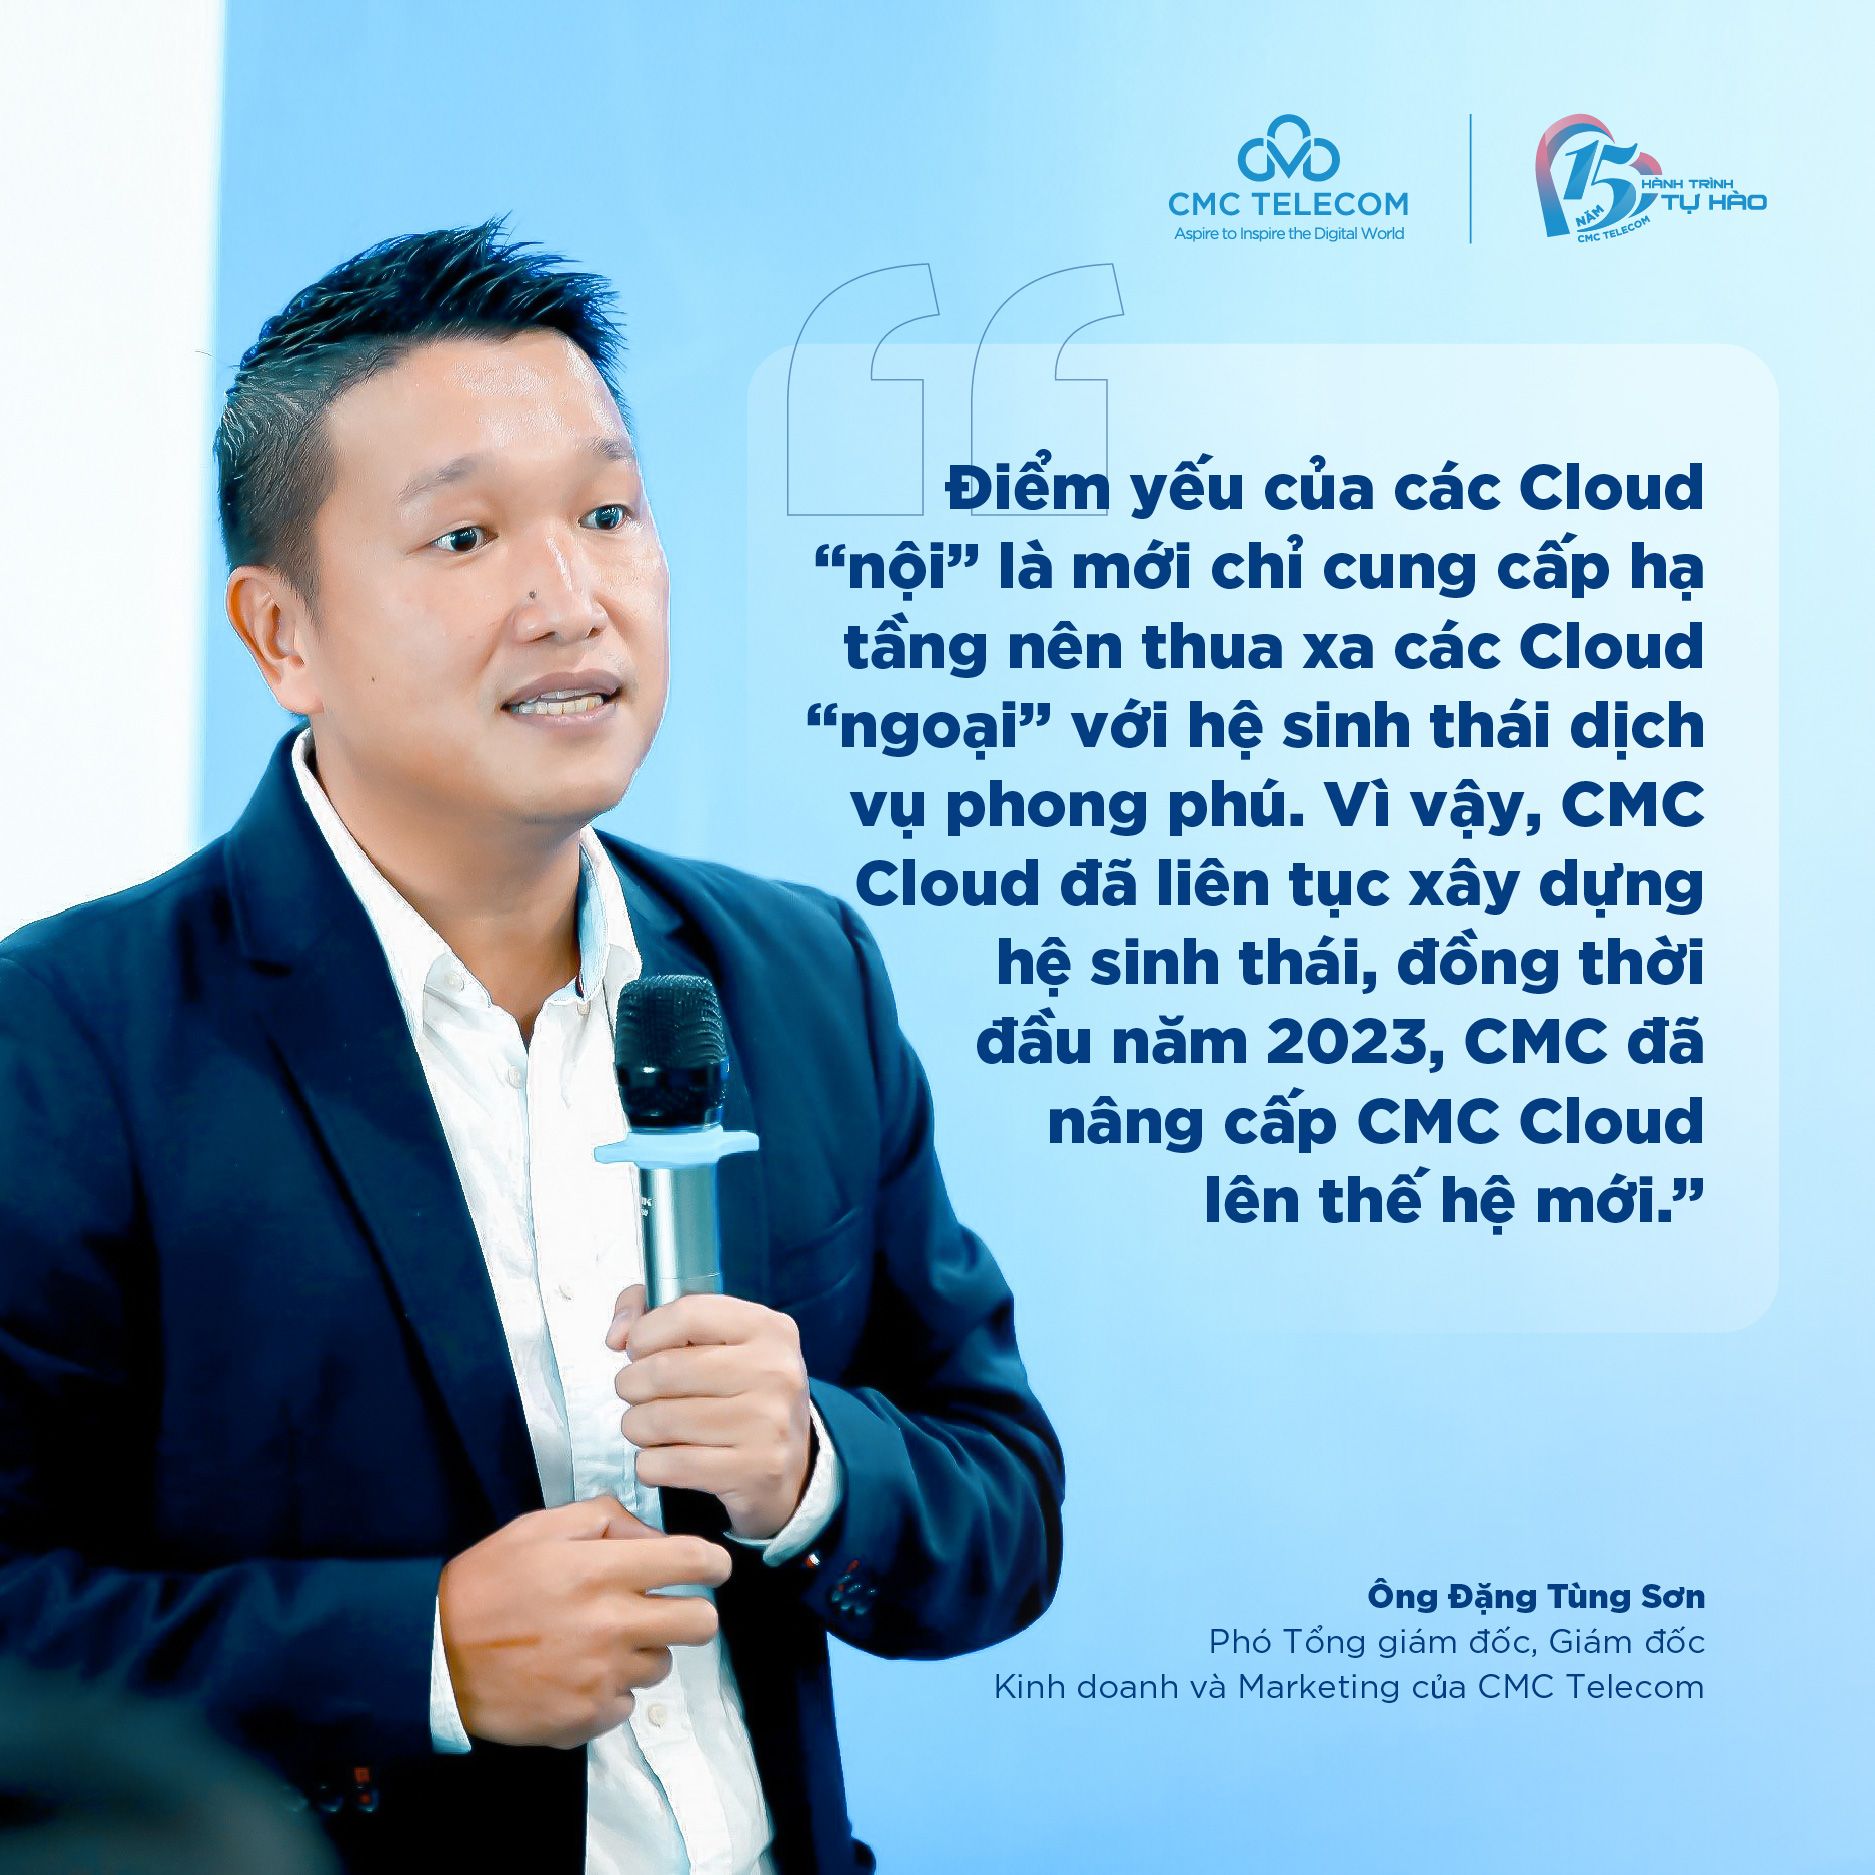 Ông Đặng Tùng Sơn, P.TGD/ GD Kinh doanh và Marketing CMC Telecom chia sẻ 